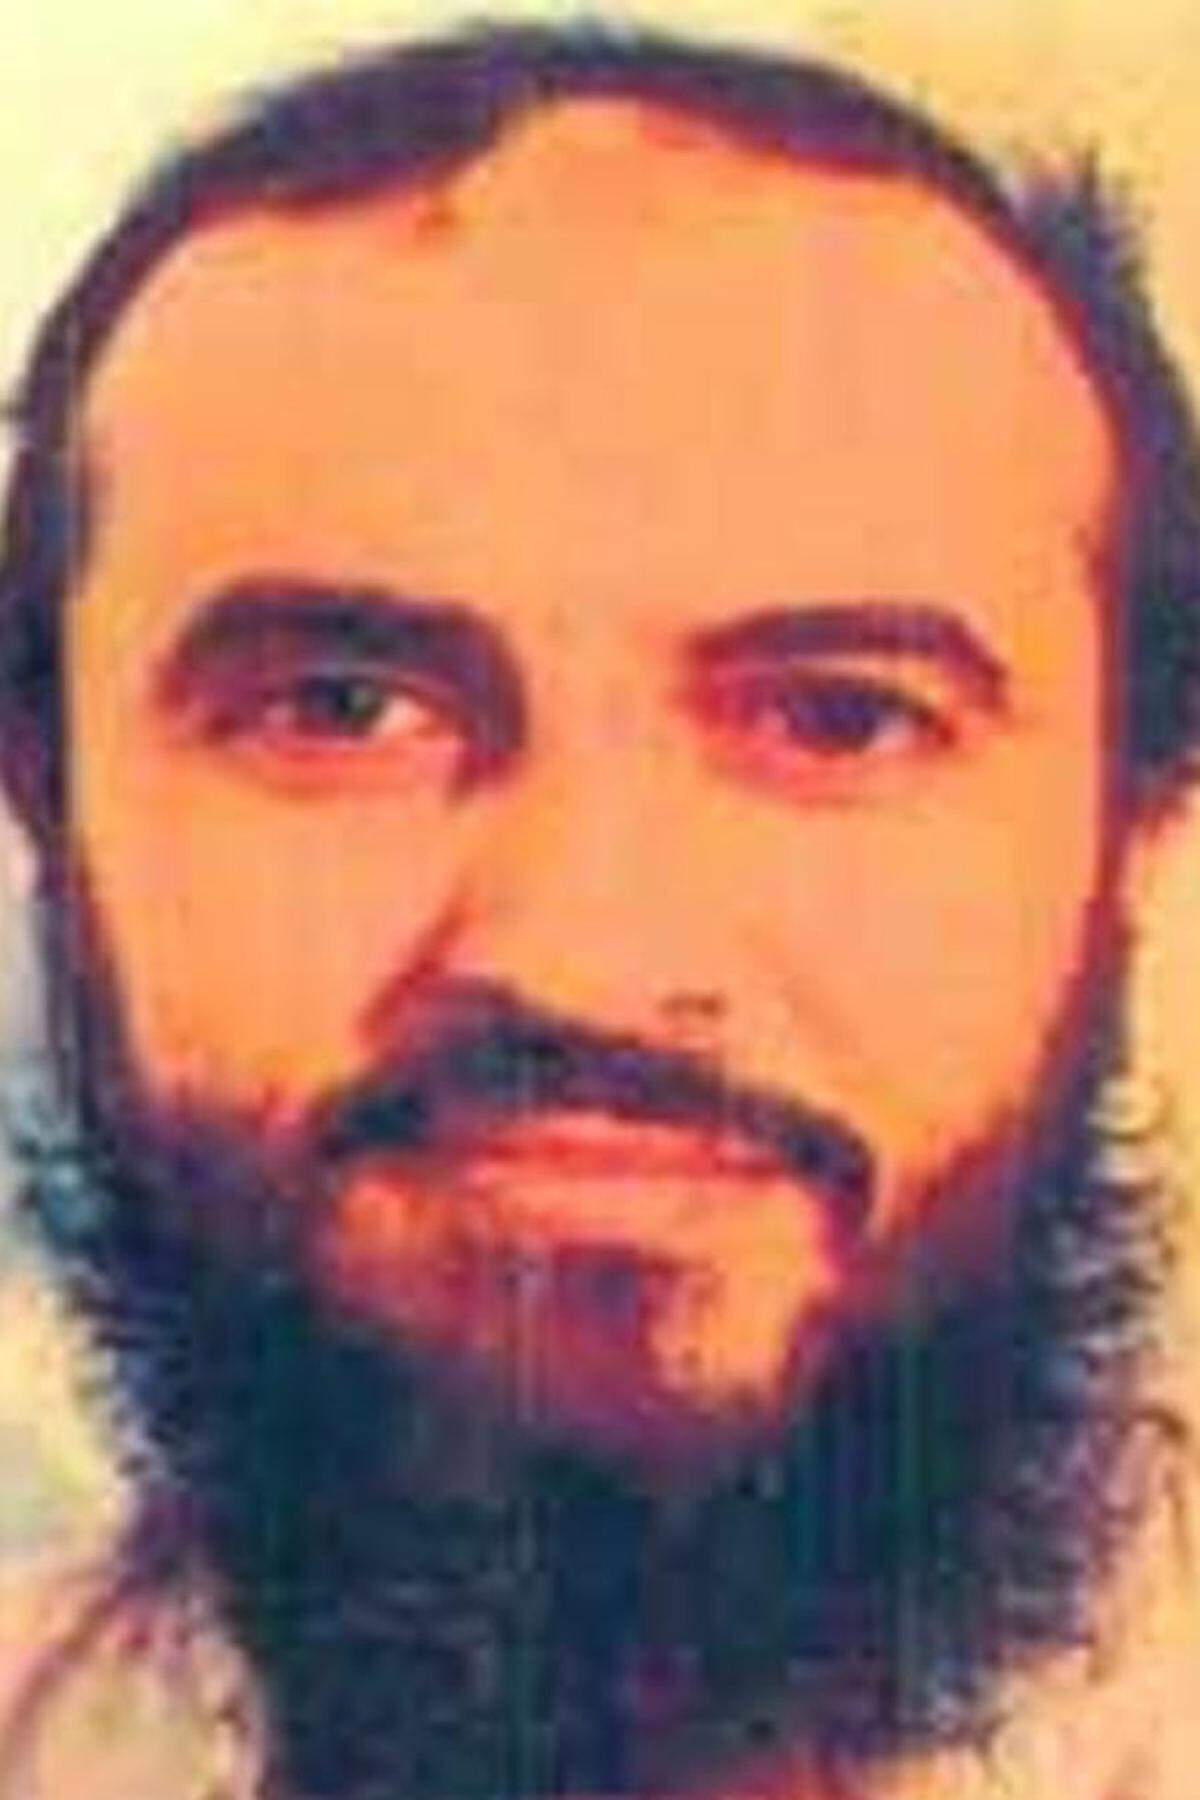 Der Jemen ist seit vielen Jahren eine Hochburg der al-Qaida. Bereits im Oktober 2000 wurde vor der Küste ein Sprengstoffanschlag auf das US-Kriegsschiff „U.S.S. Cole“ verübt. Einer der Drahtzieher war Jamal Ahmad Mohammed al-Badawi. Er wurde im Jemen verhaftet. Seit seinem Gefängnisausbruch 2006 ist er auf der Flucht.